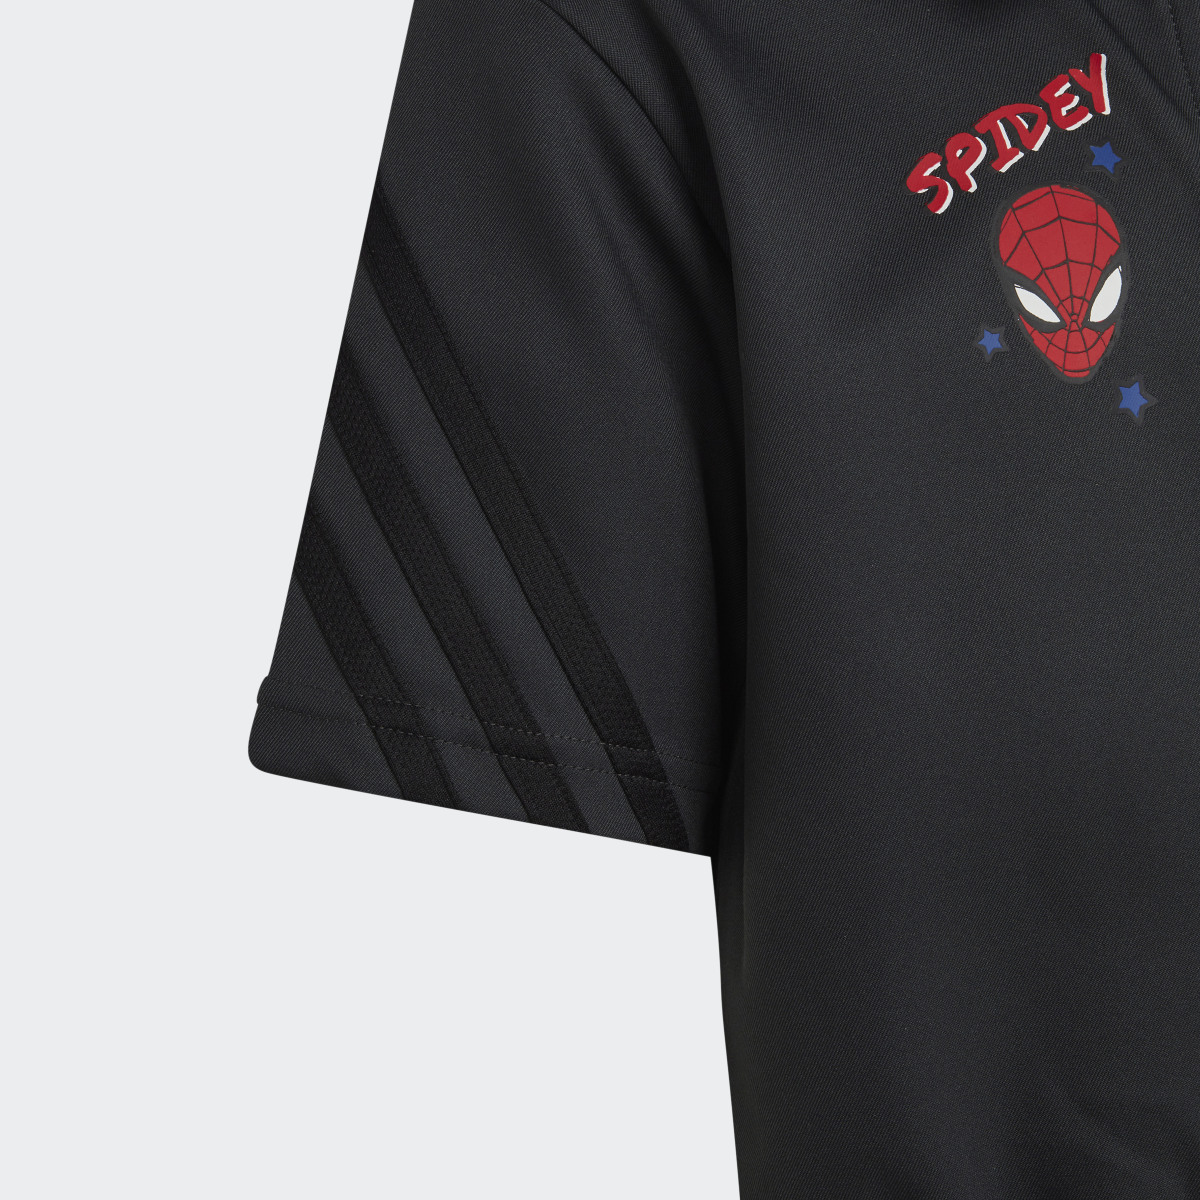 Adidas x Marvel's Spider-Man Bodysuit. 4